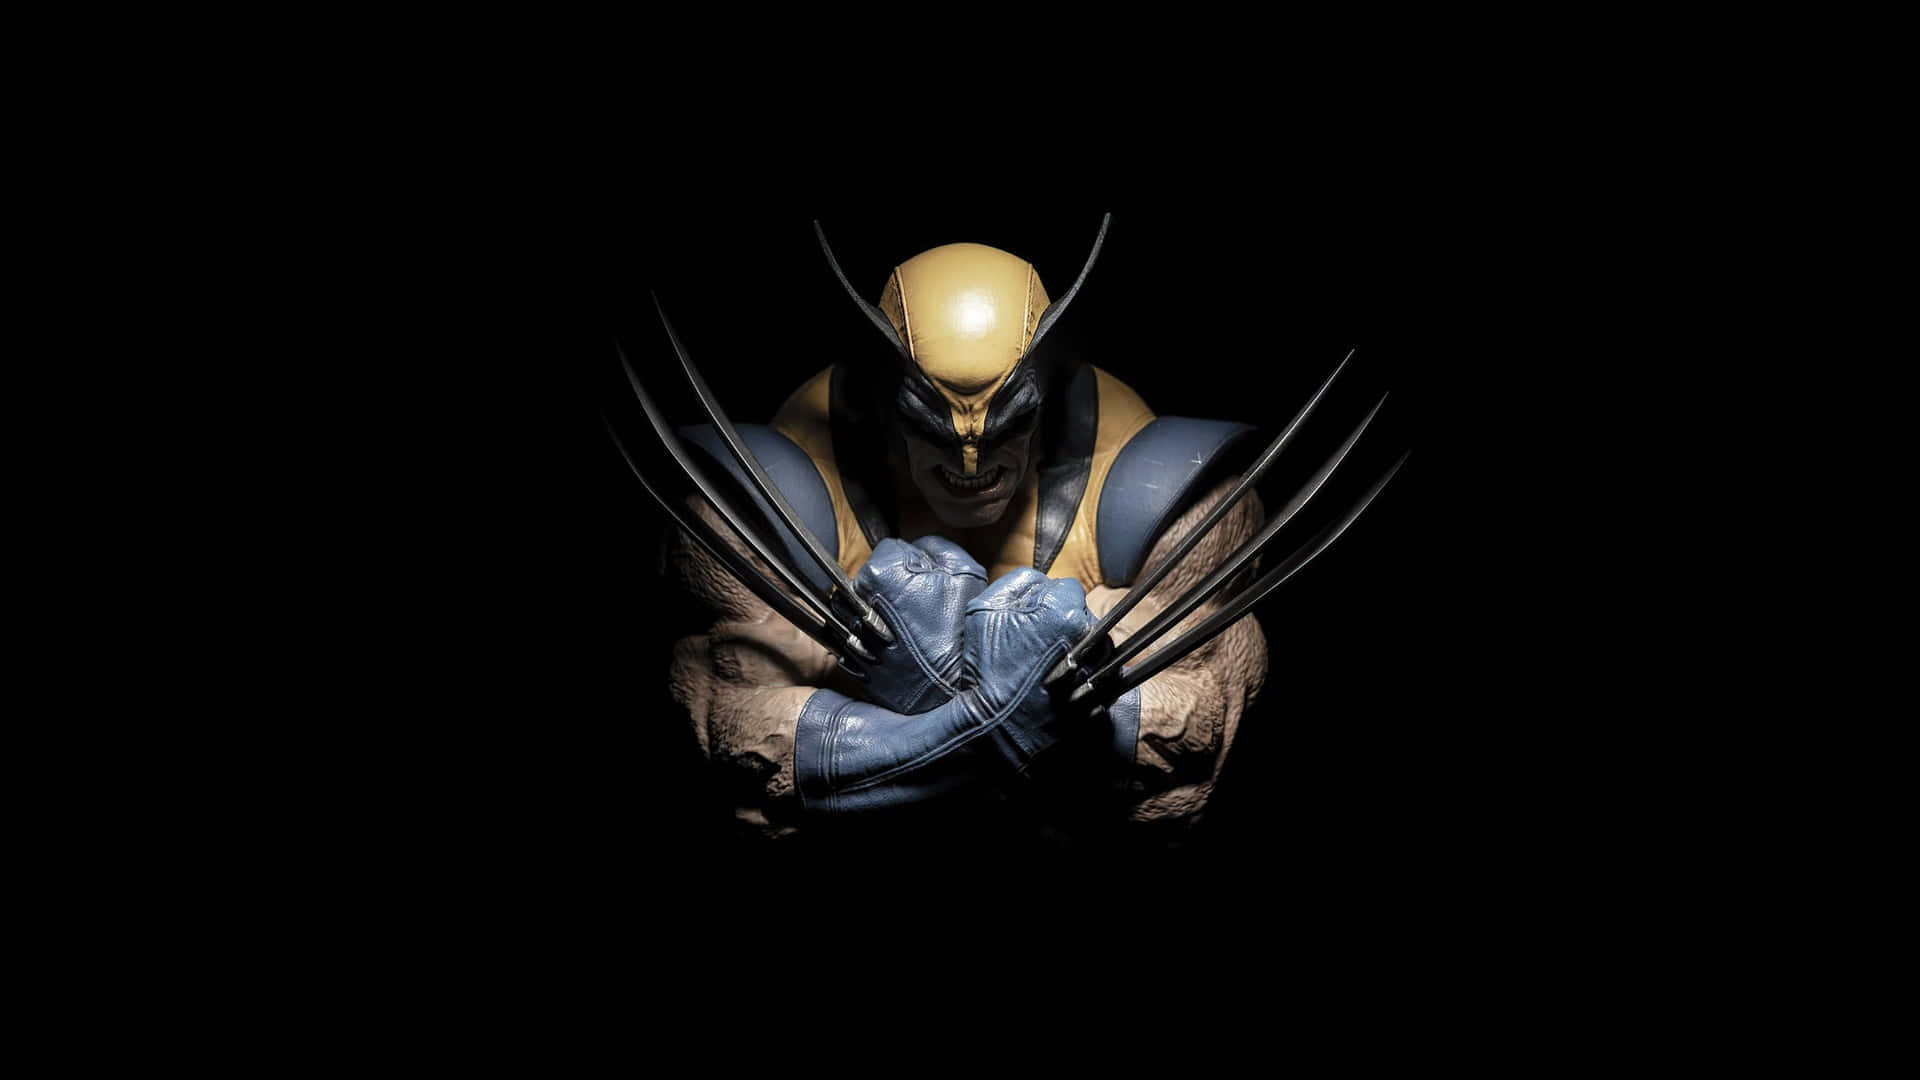 Elsuperhéroe De Marvel Con Garras De Adamantium, Wolverine.